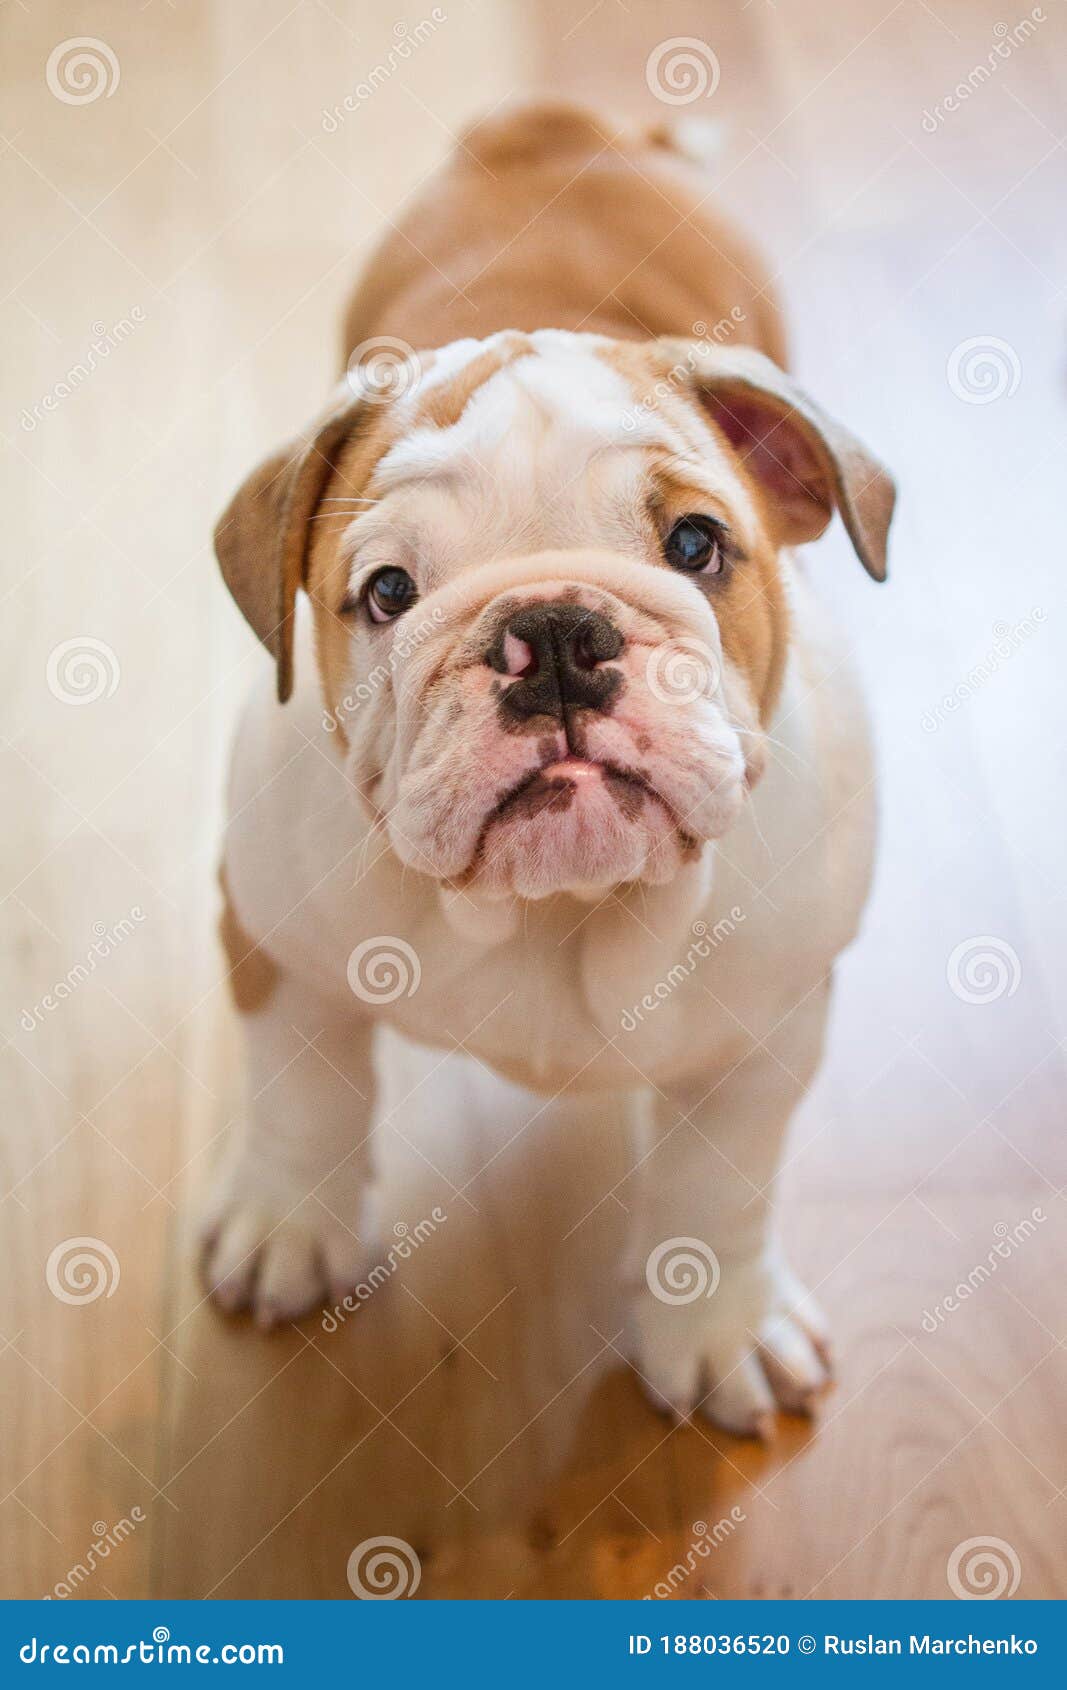 Adorable Cachorro De Bulldog Inglés. Puesto De Cachorro De Bulldog En Inglés En El Suelo En Casa. Retrato De Cierre Foto de archivo - Imagen de perro: 188036520